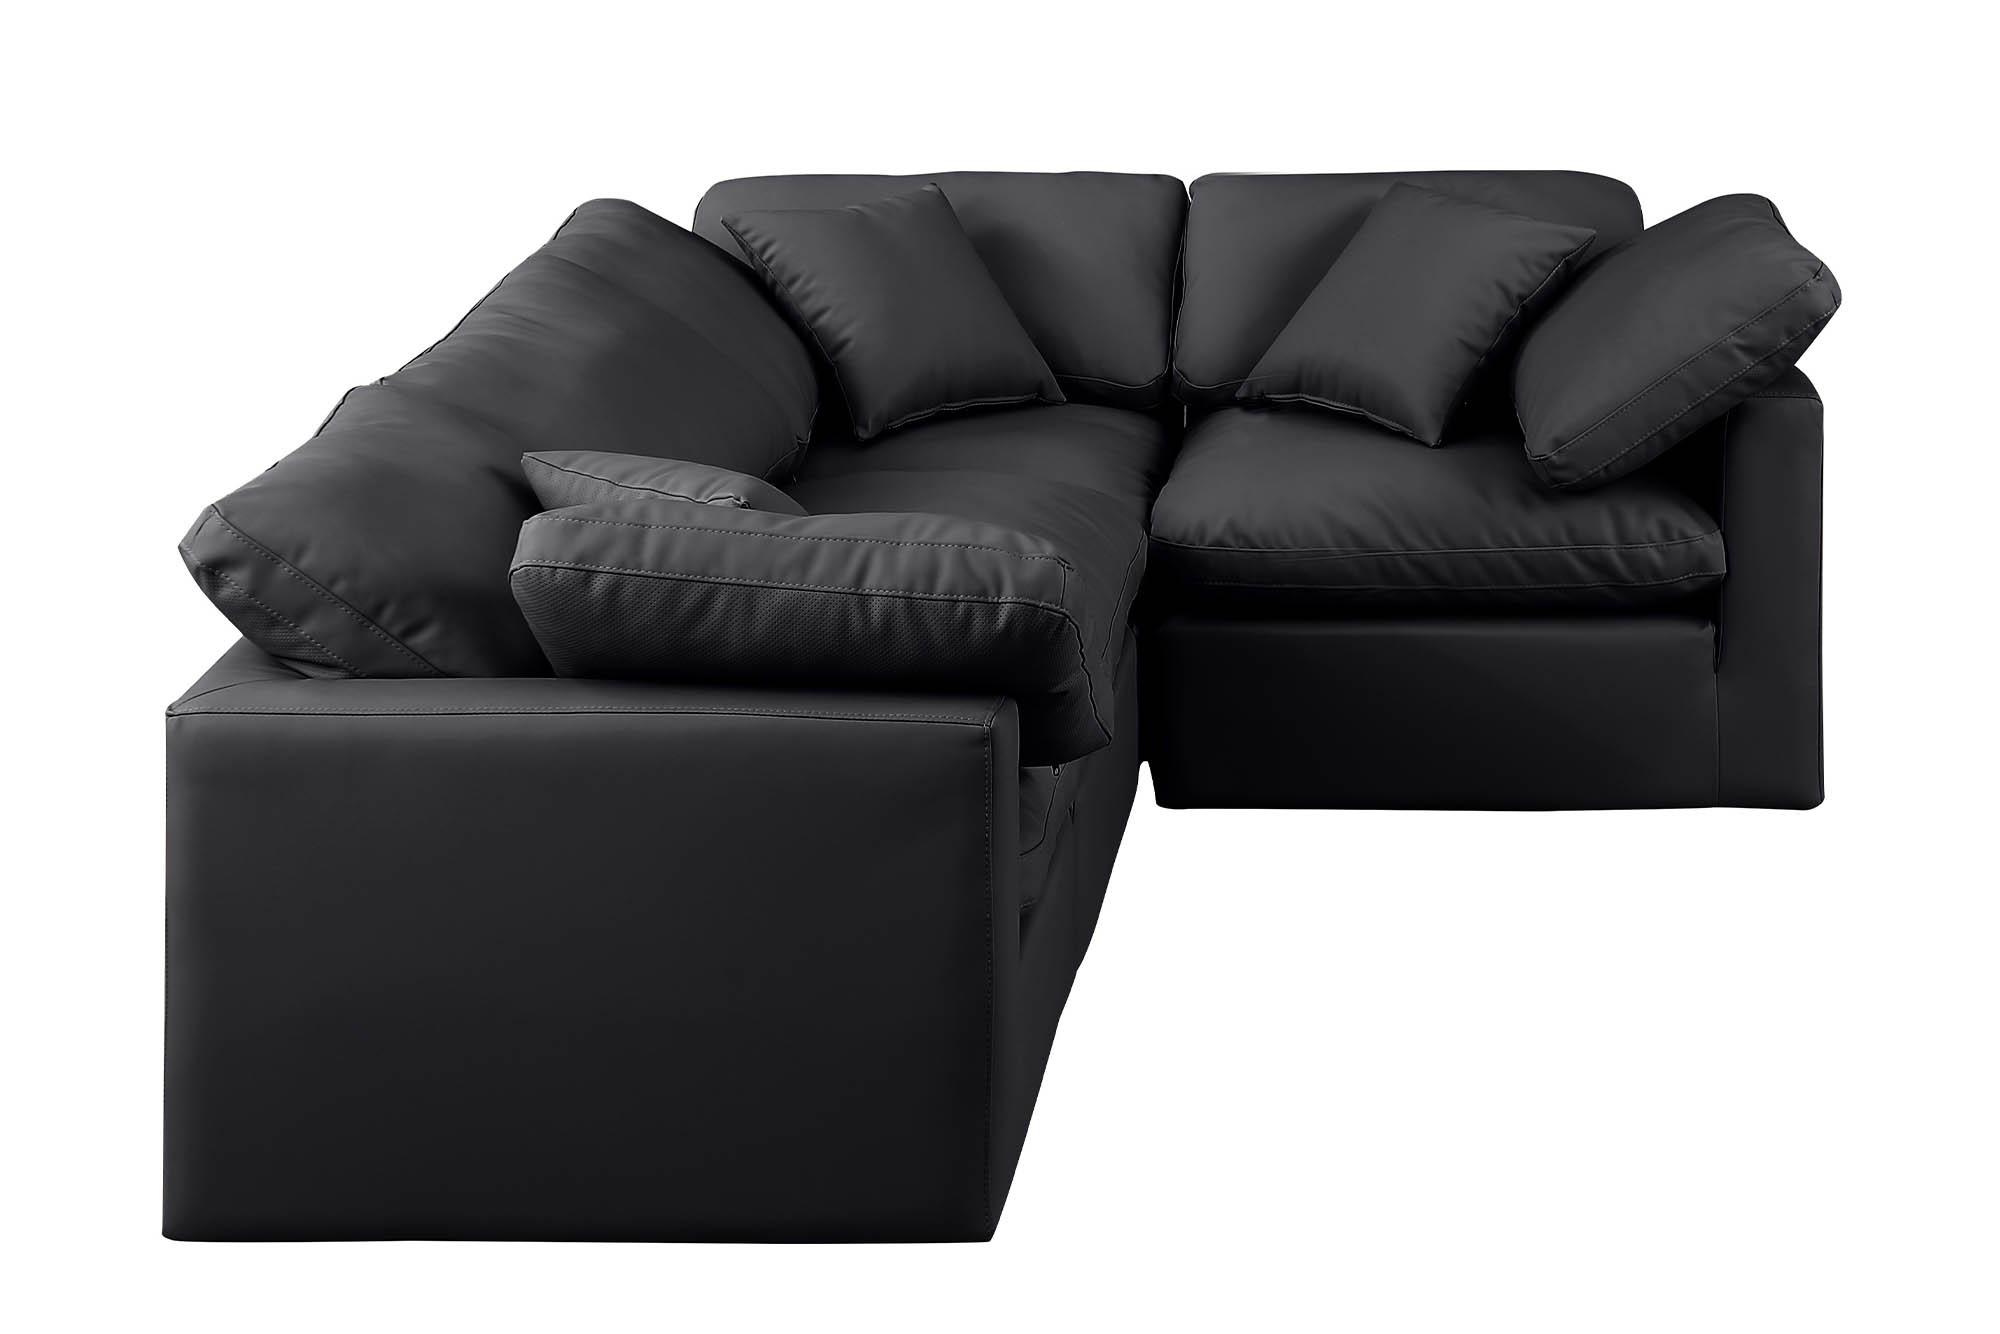 

    
Meridian Furniture INDULGE 146Black-Sec4C Modular Sectional Sofa Black 146Black-Sec4C
